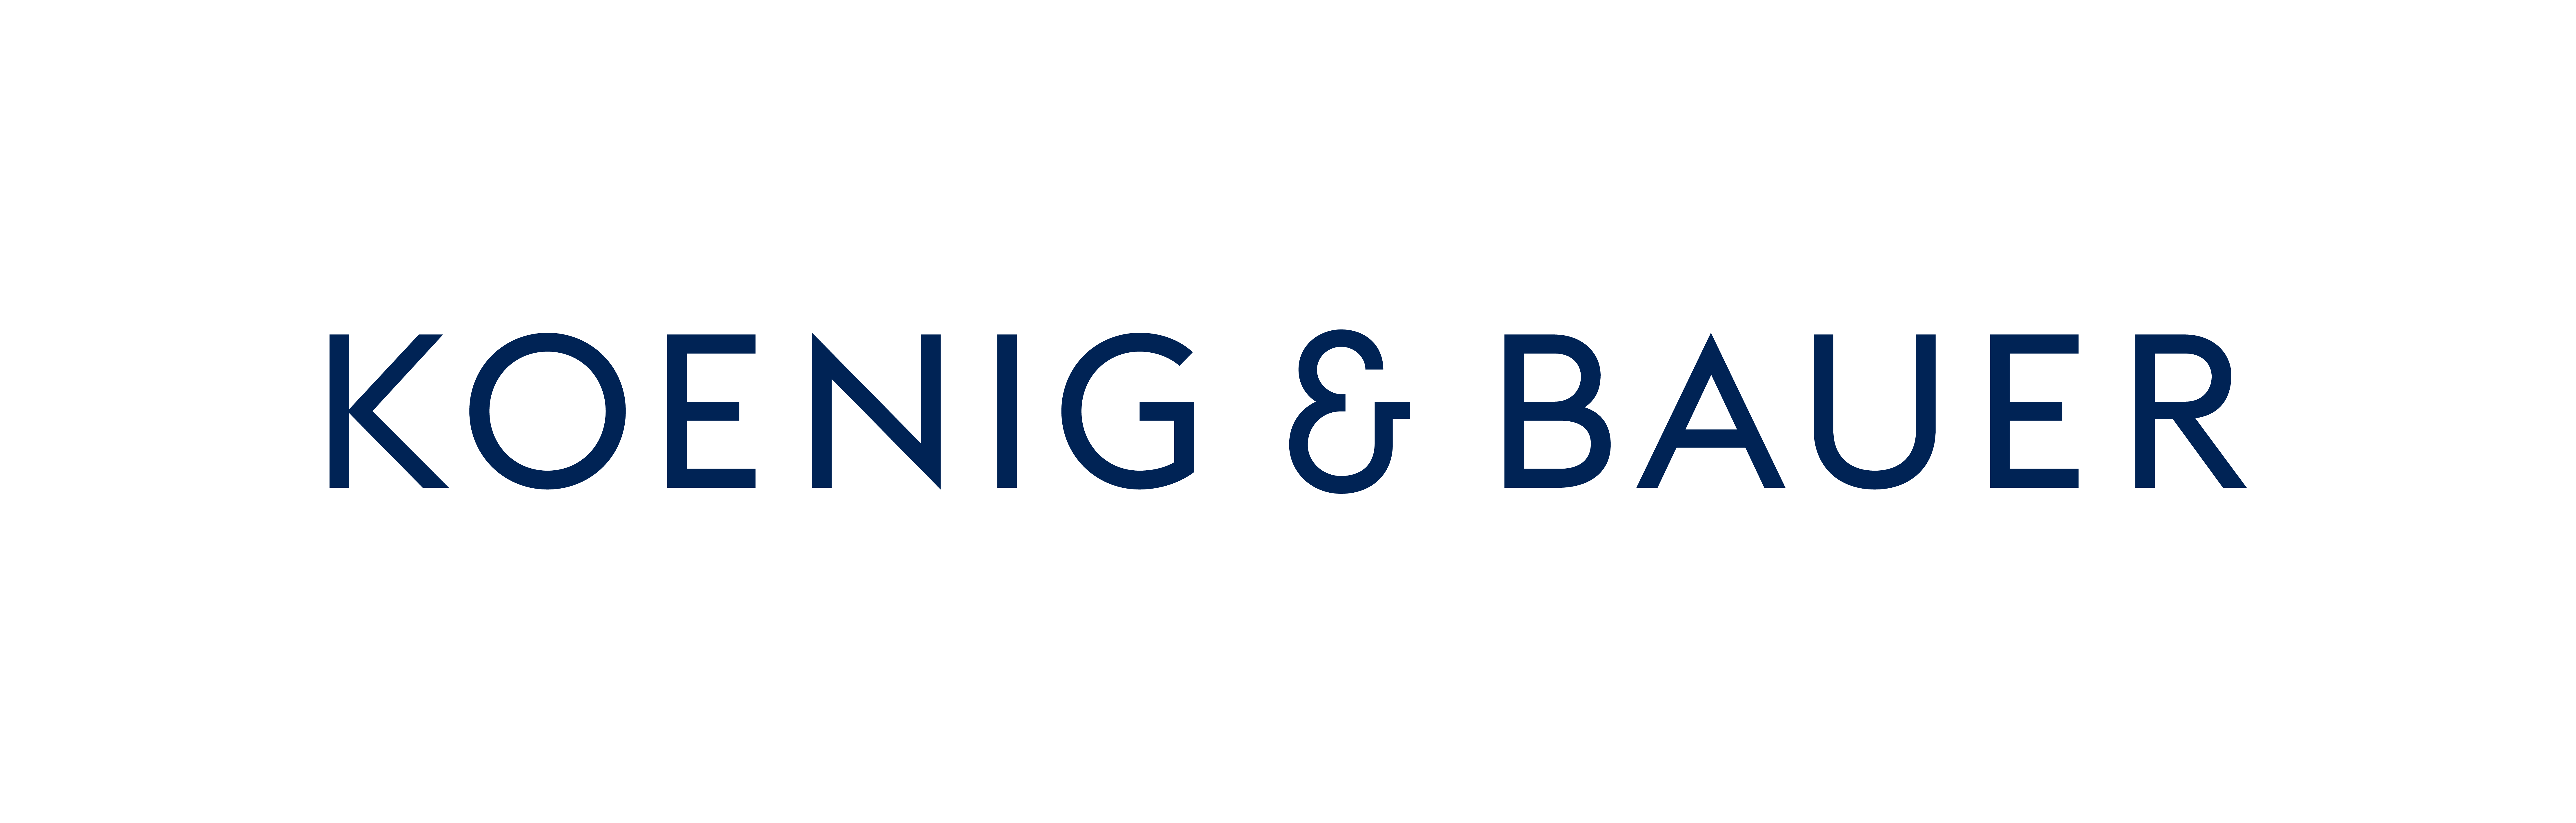 Koenig_Bauer_Logo